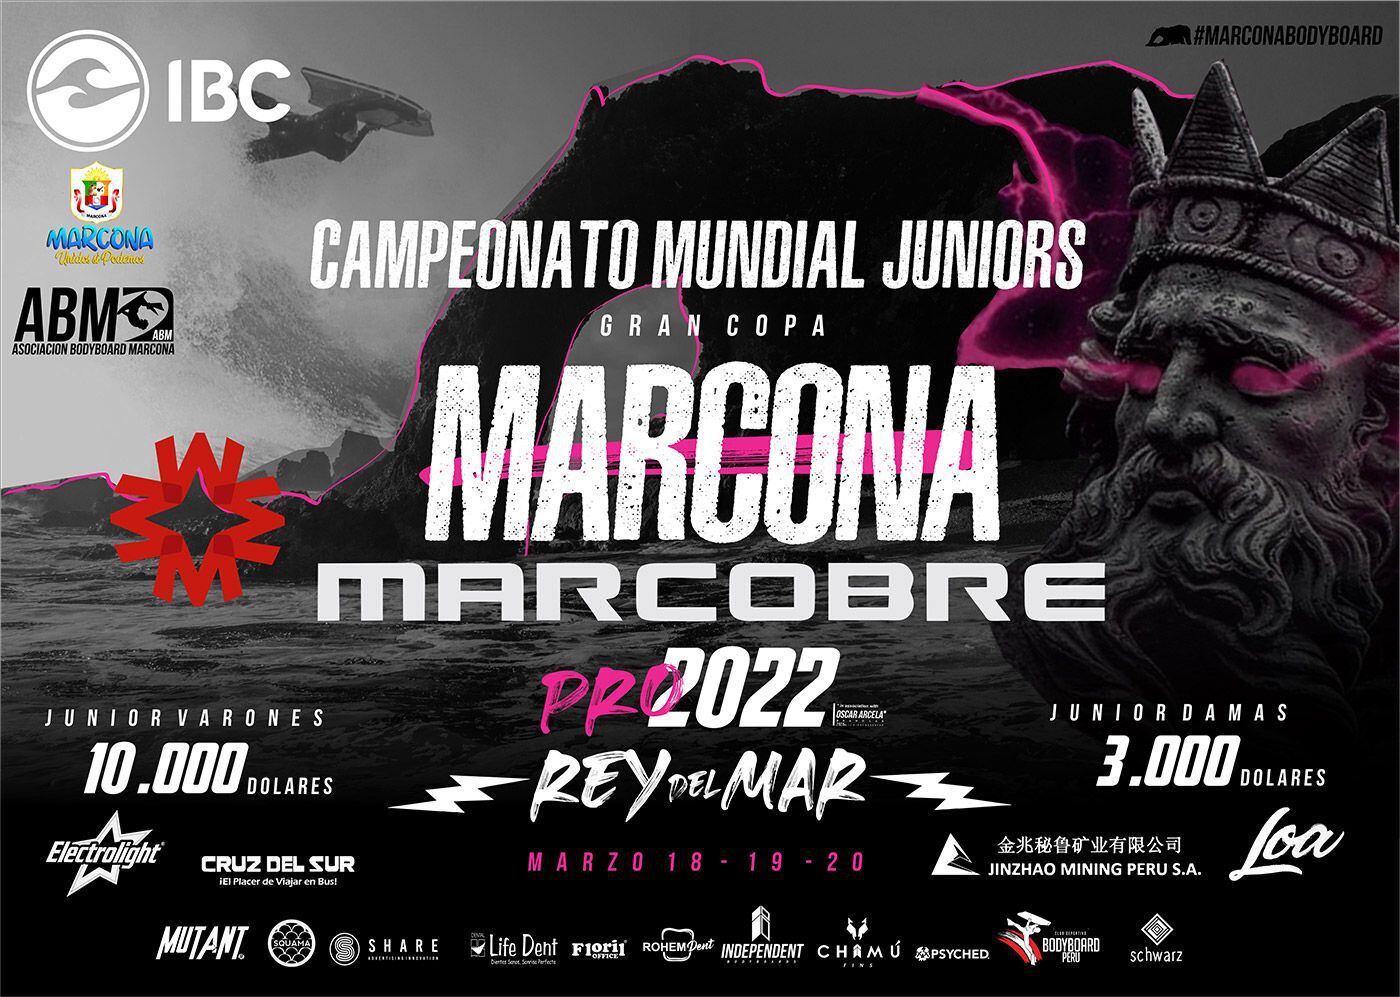 El Gran Copa: Marcona Marcobre Pro 2022 “Rey del Mar” será el próximo evento del Tour Mundial. (Foto: IBC)